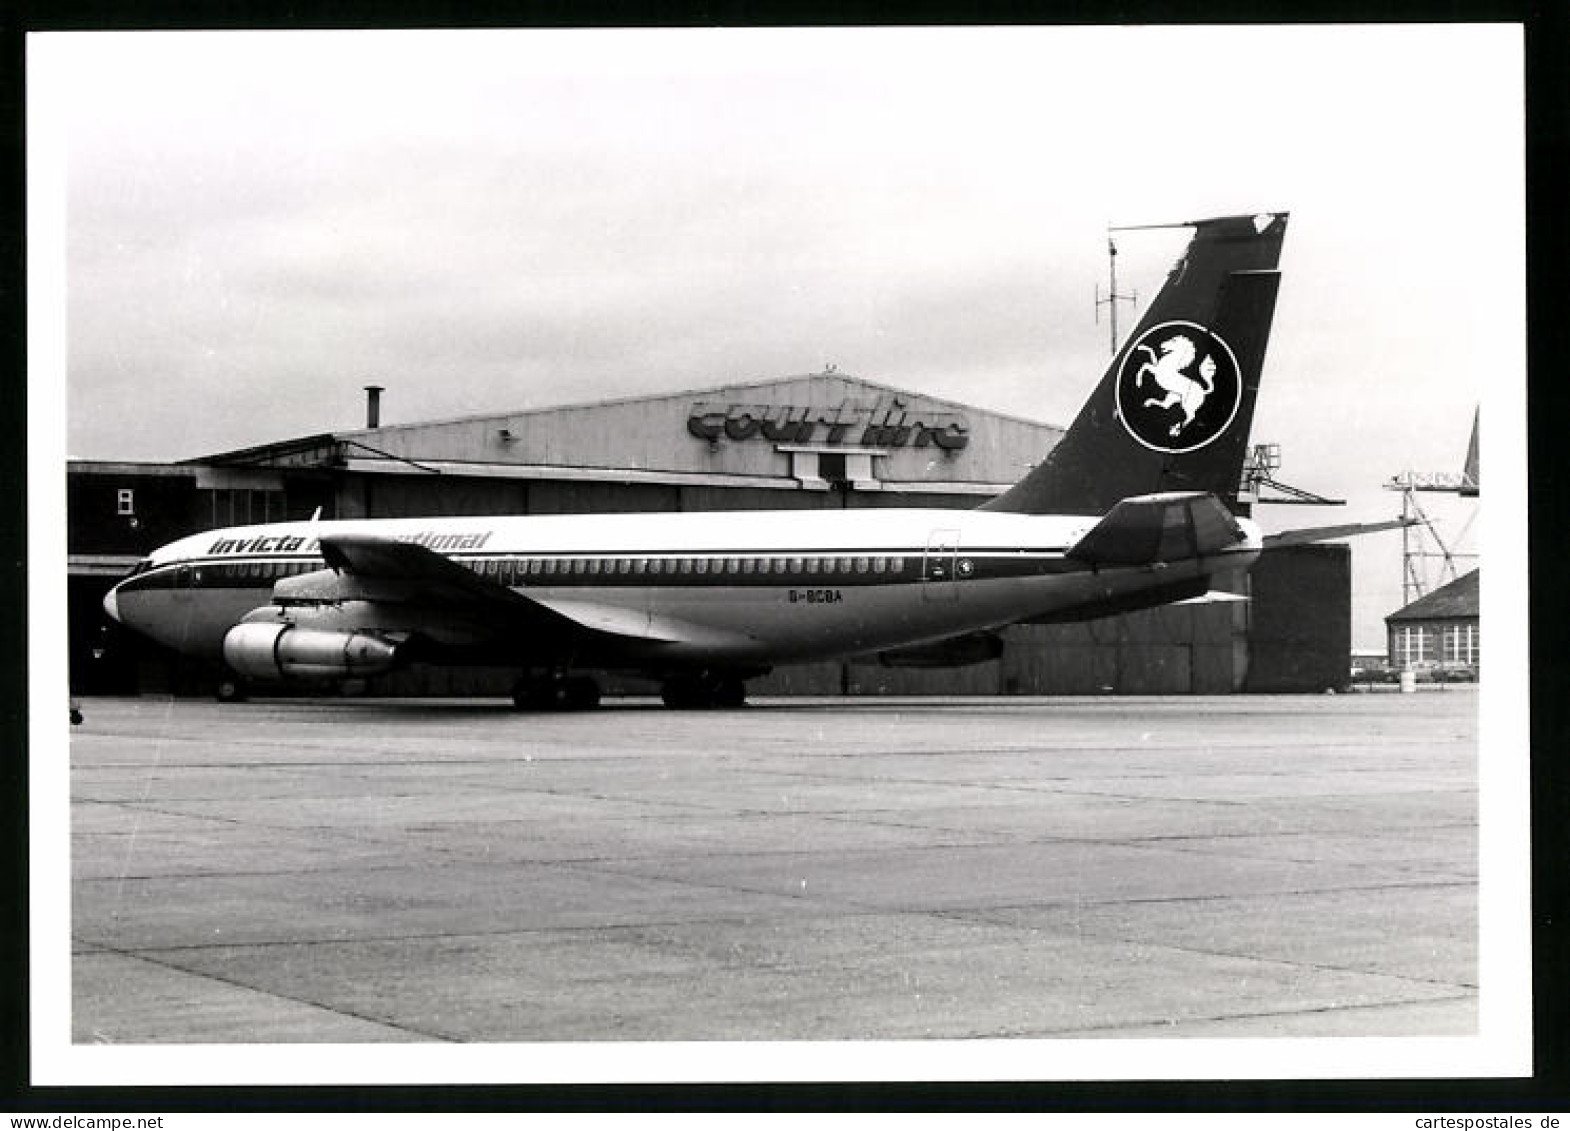 Fotografie Flugzeug Boeing 707, Passagierflugzeug Der Invicta International, Kennung G-BCBA  - Aviation